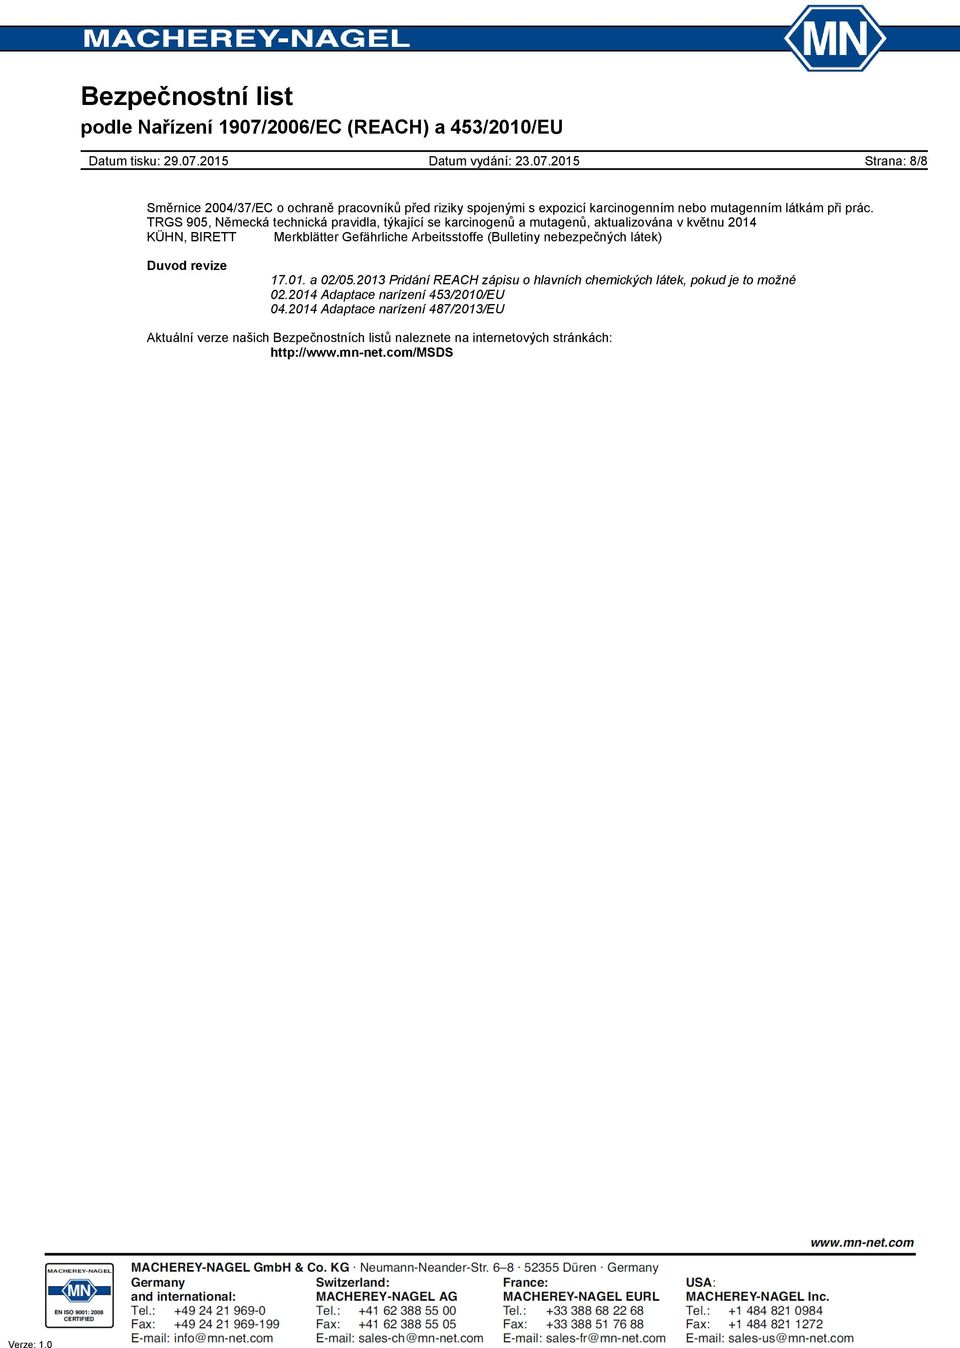 Arbeitsstoffe (Bulletiny nebezpečných látek) Duvod revize 17.01. a 02/05.2013 Pridání REACH zápisu o hlavních chemických látek, pokud je to možné 02.